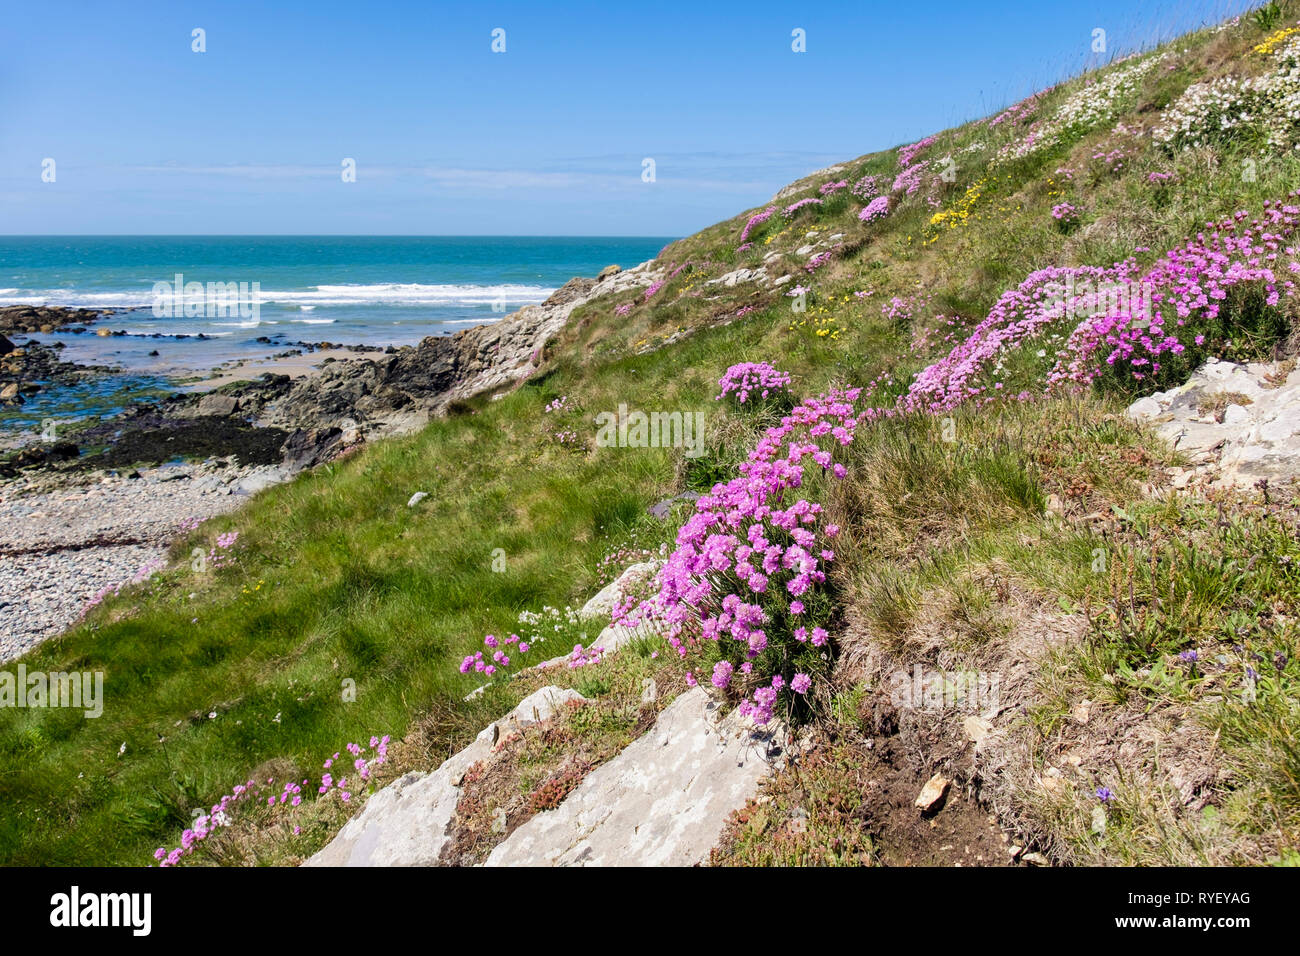 Fleurs de rose marin ou de thrift (Armeria maritima) poussant le long de la côte à Cable Bay / Porth Crugmor, île d'Anglesey, au nord du pays de Galles, au Royaume-Uni, en Grande-Bretagne Banque D'Images